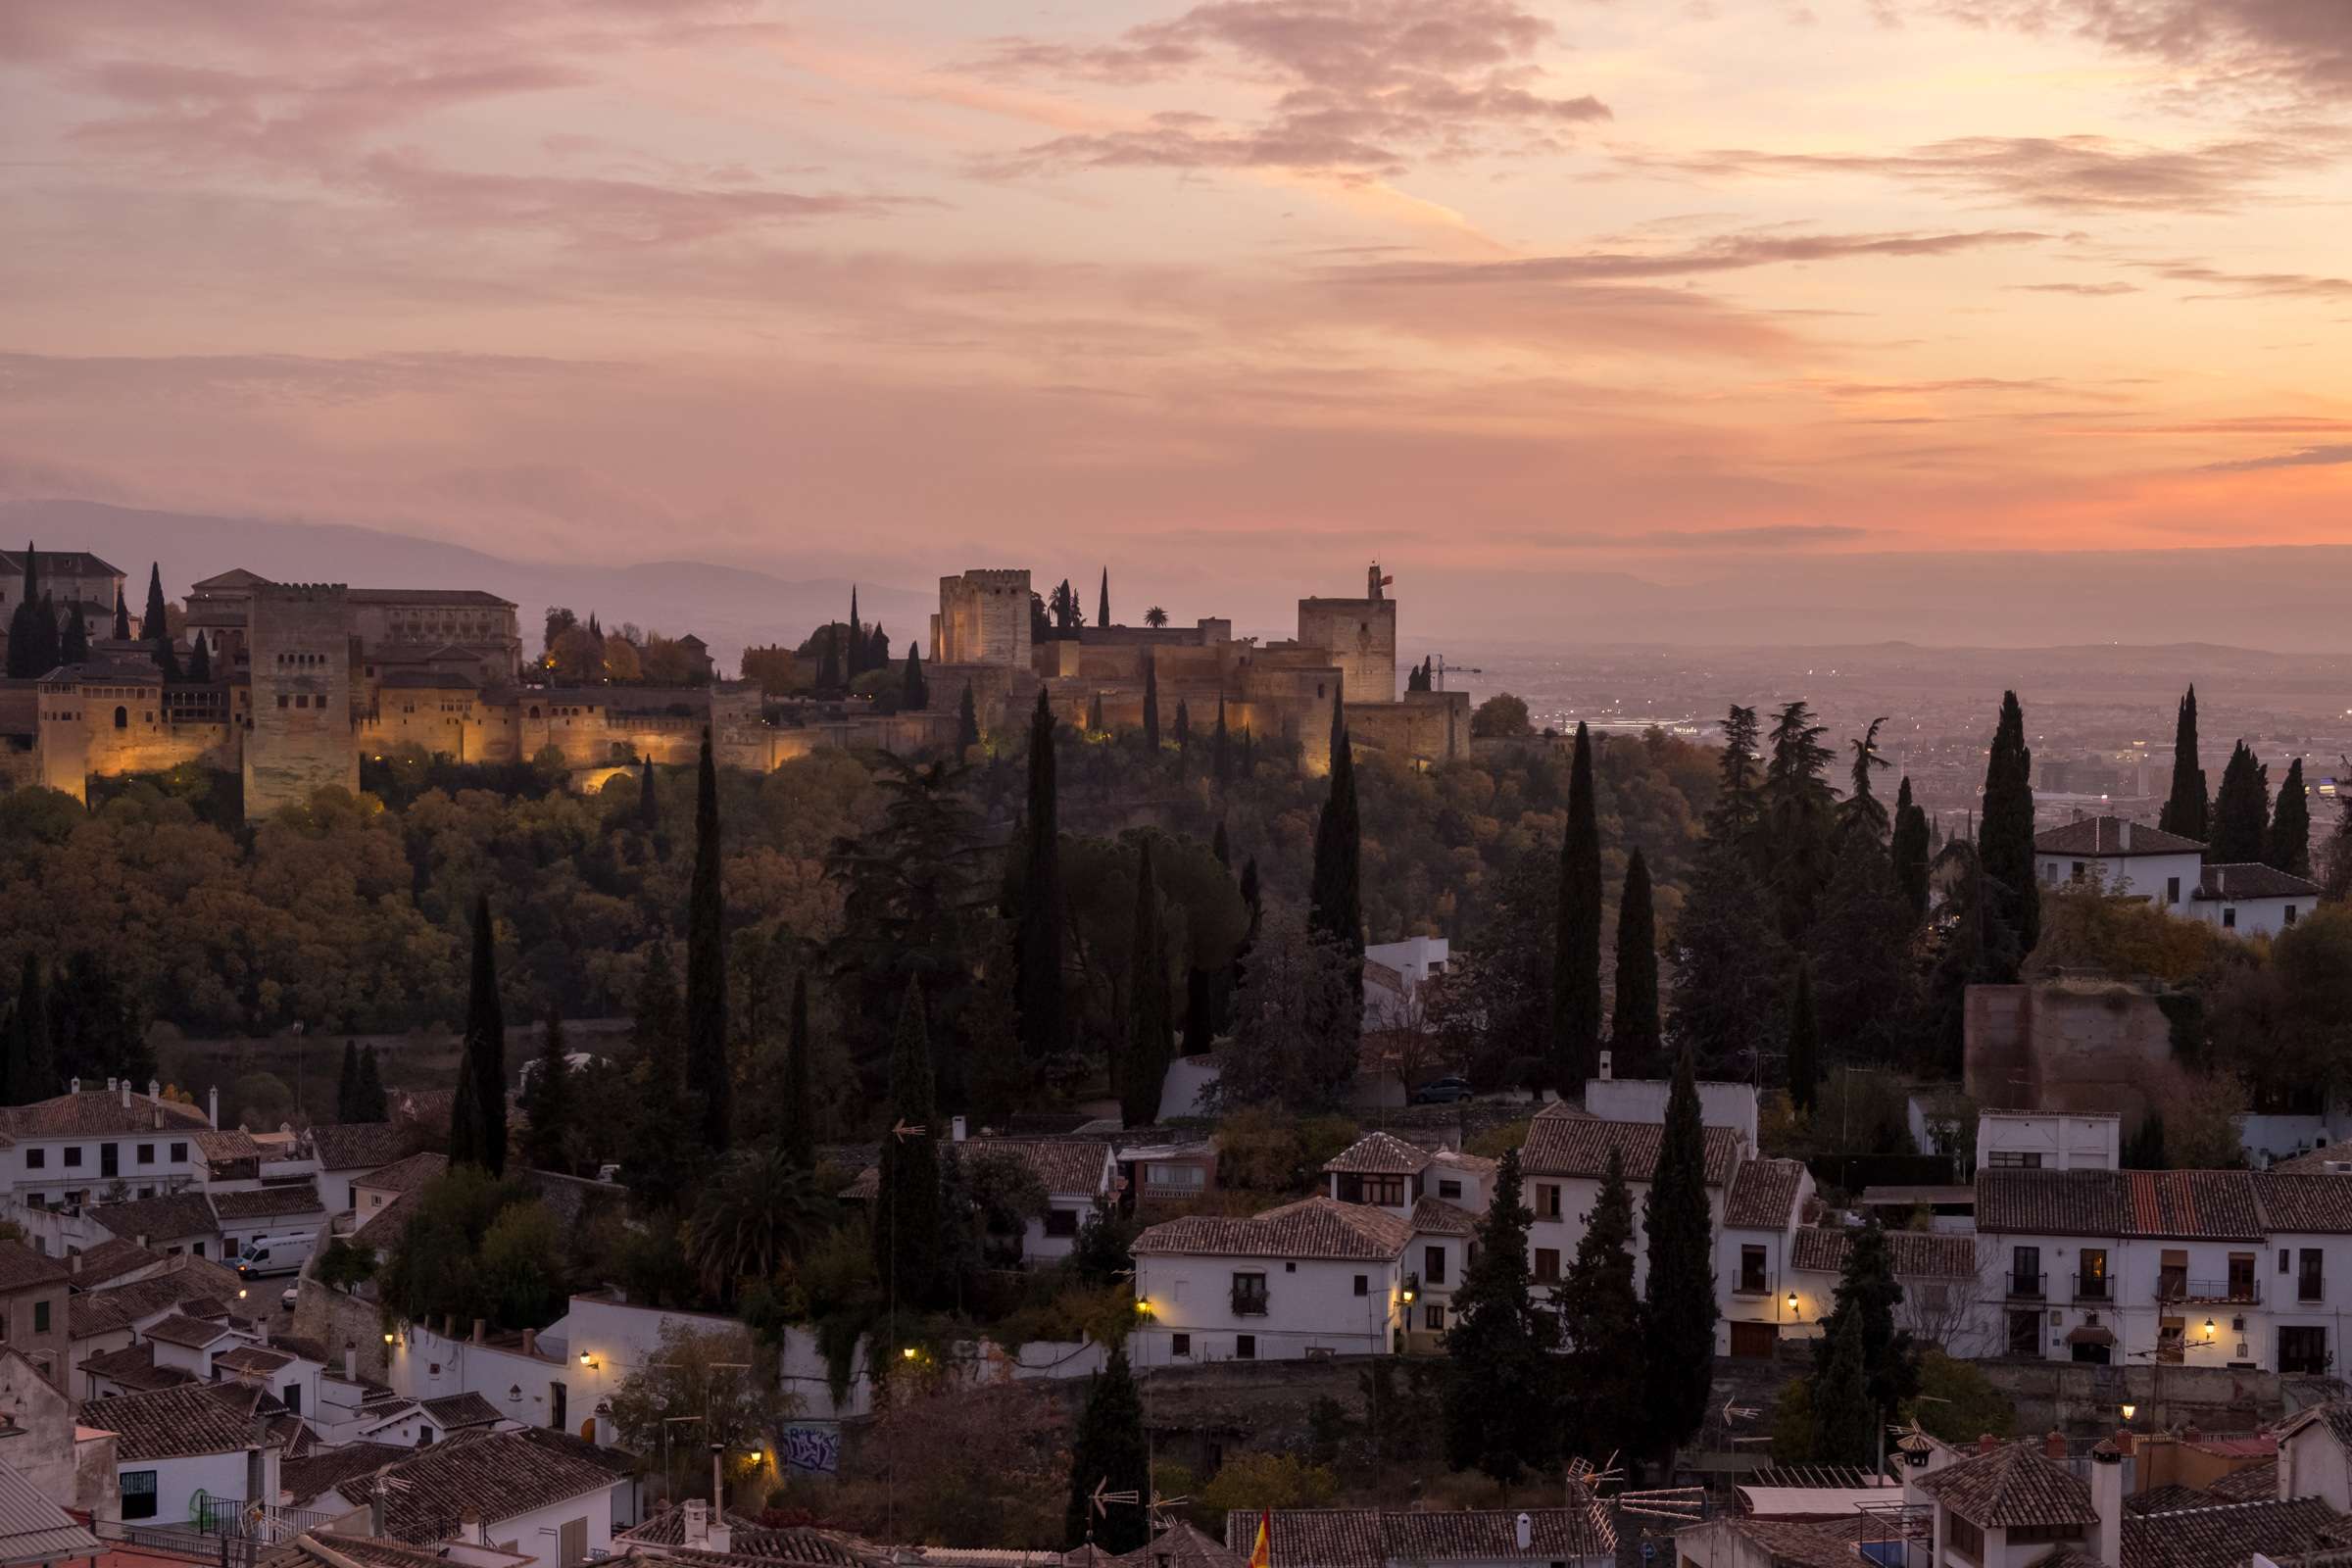 Burning sunset over The Alhambra, Granada